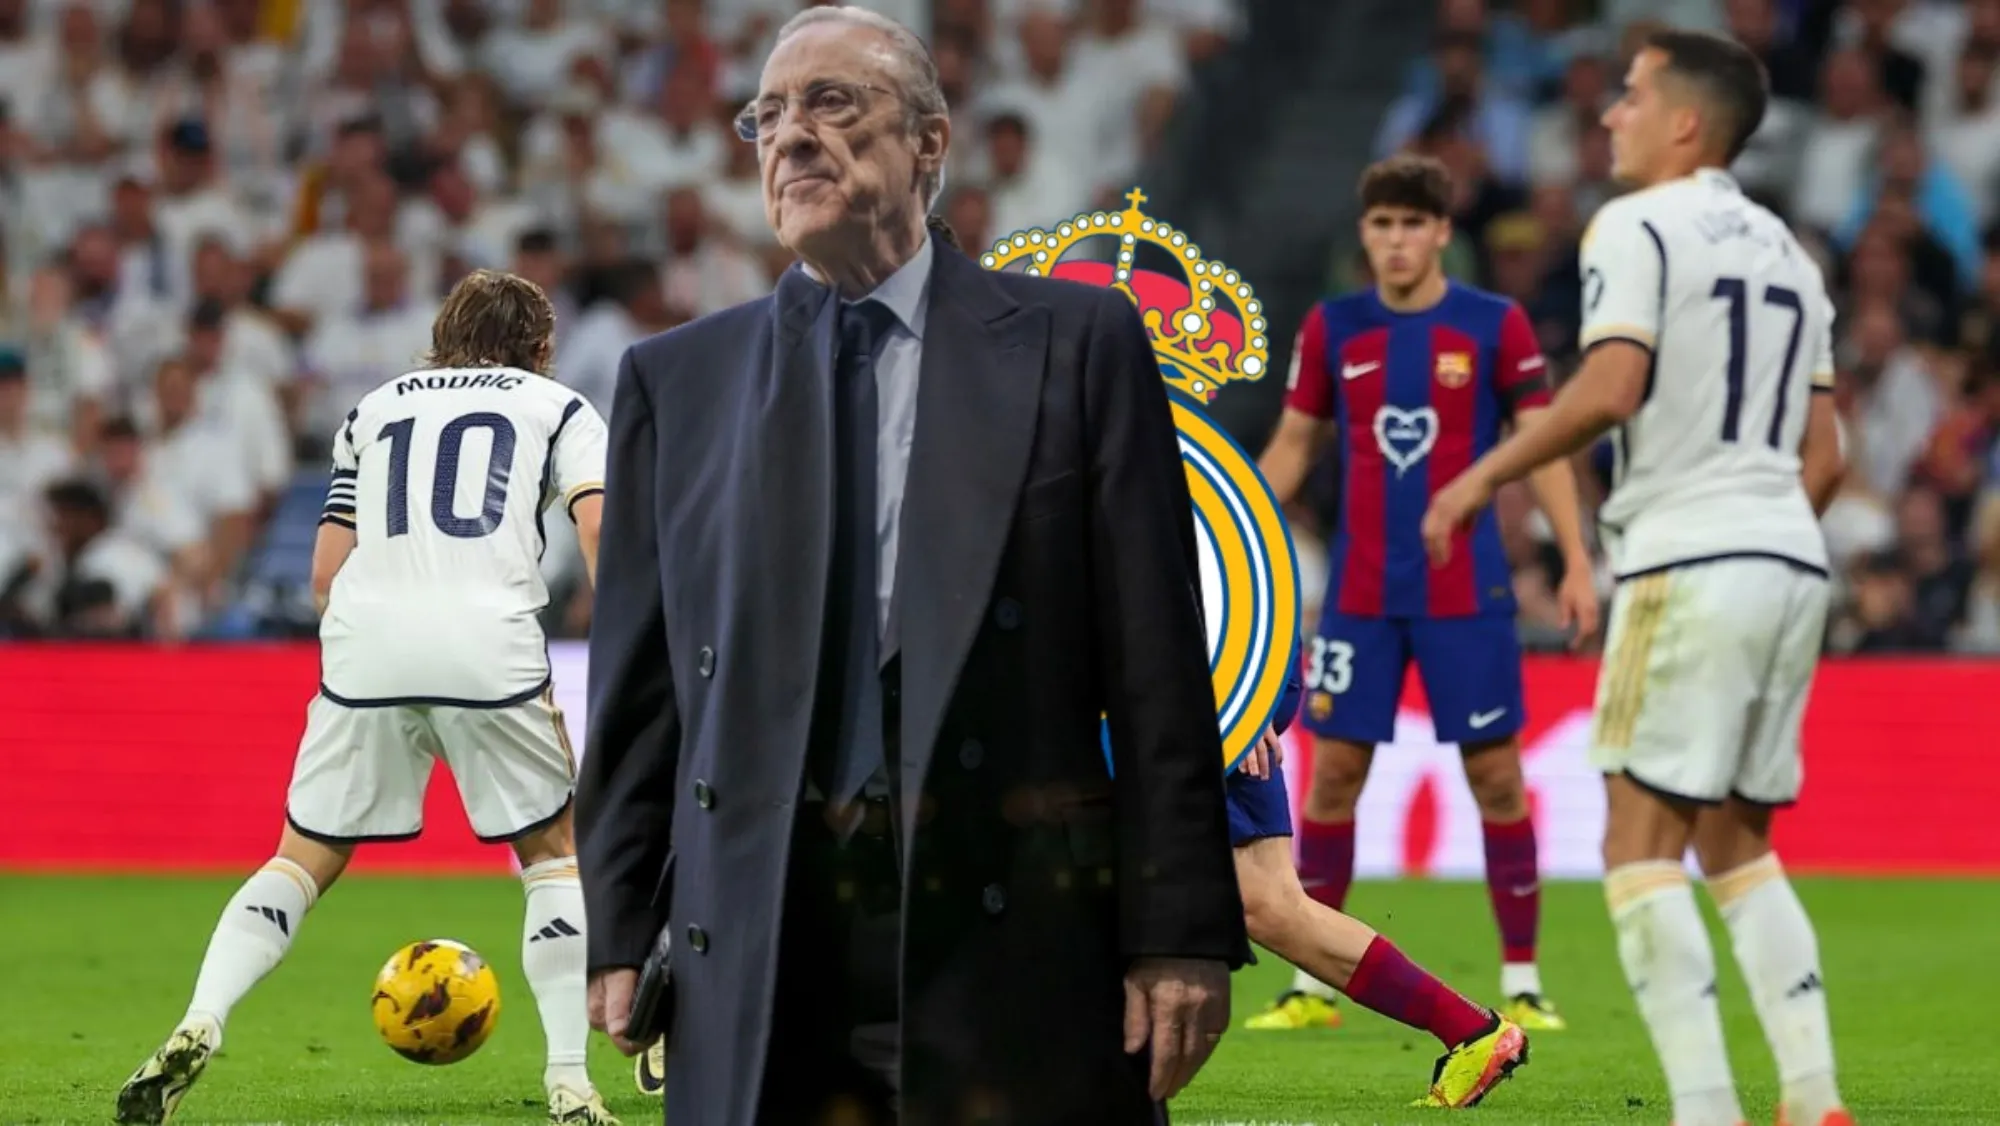 El Real Madrid puede ficharle tras su gran partido en el clásico: "Hay que f..."